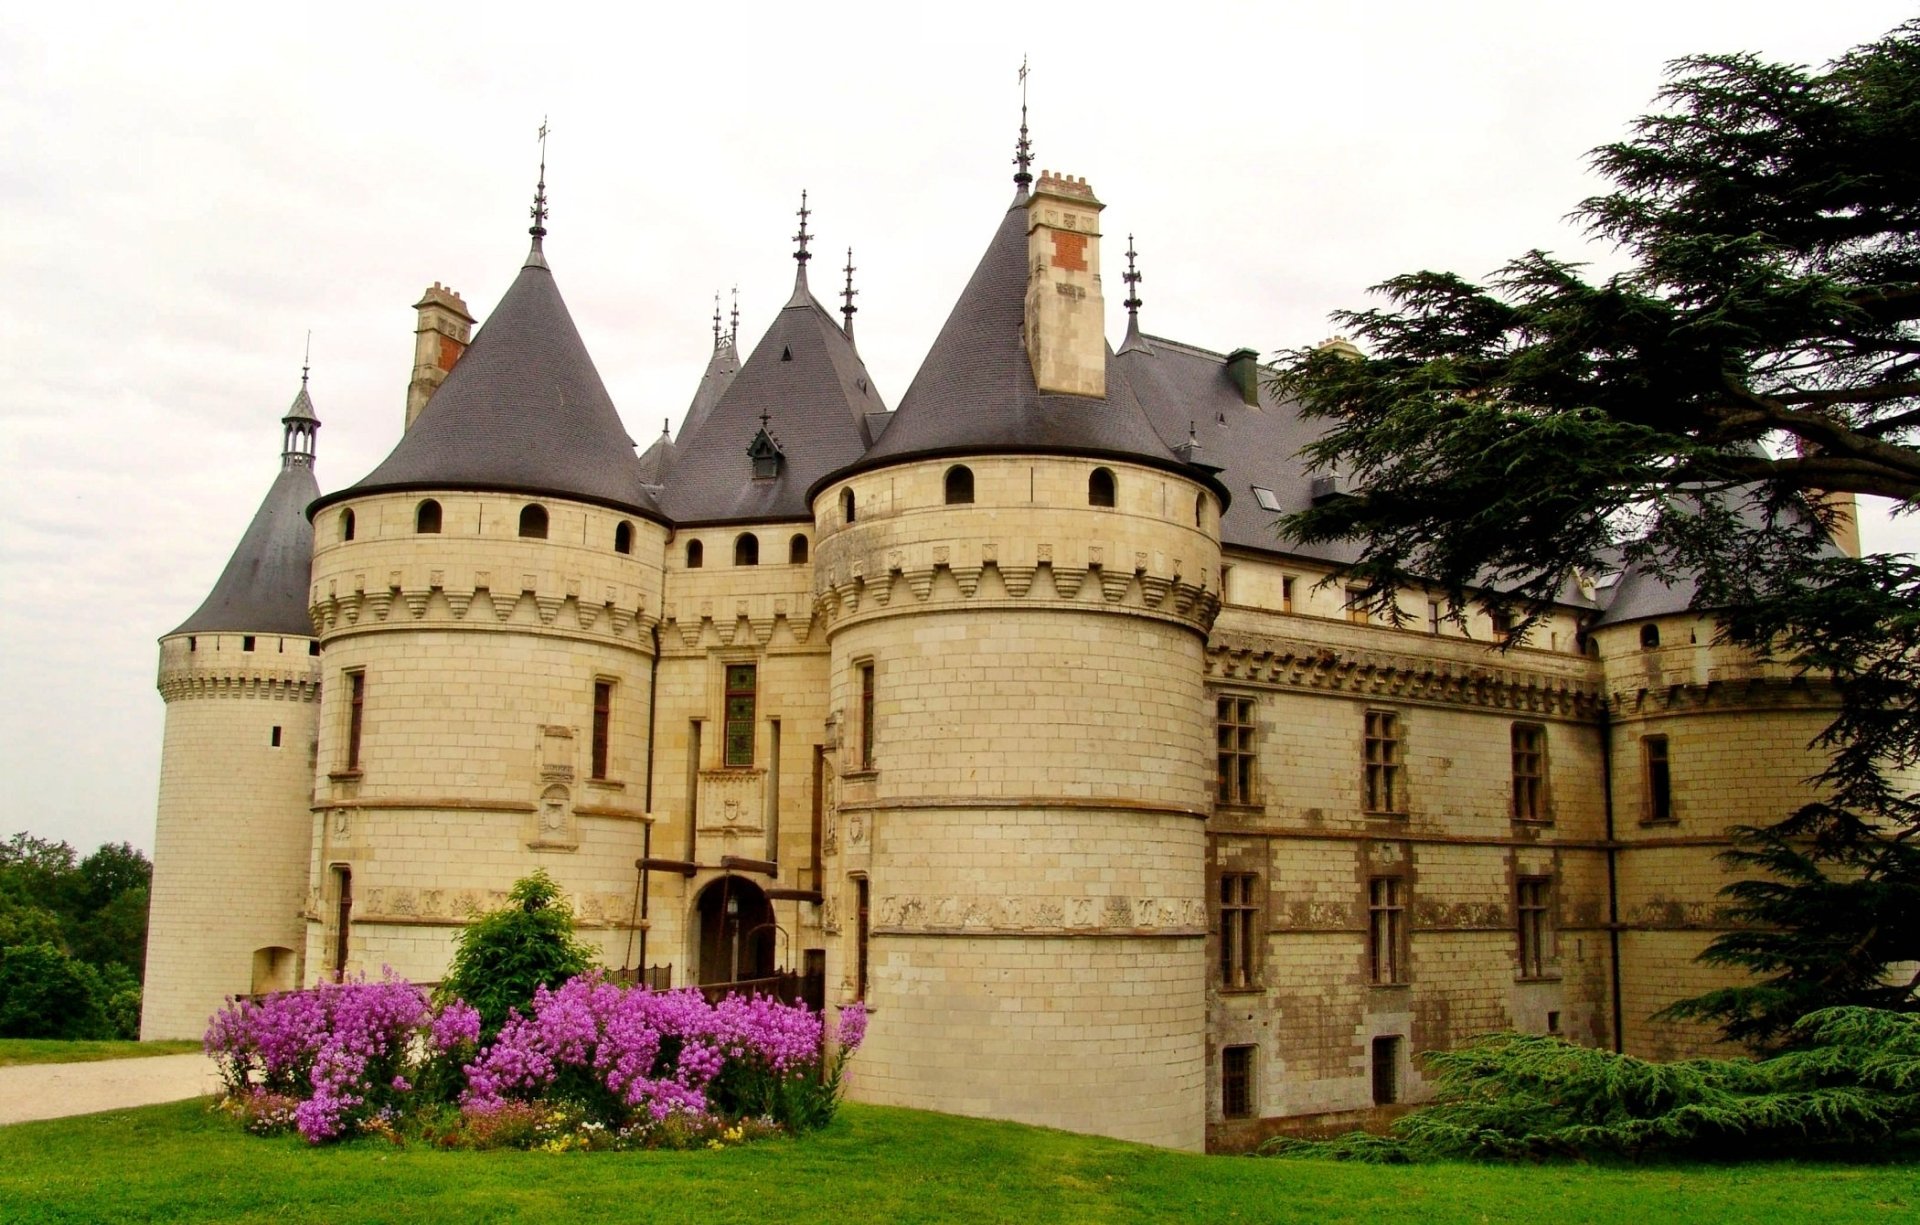 Chateau De Chaumont Wallpapers